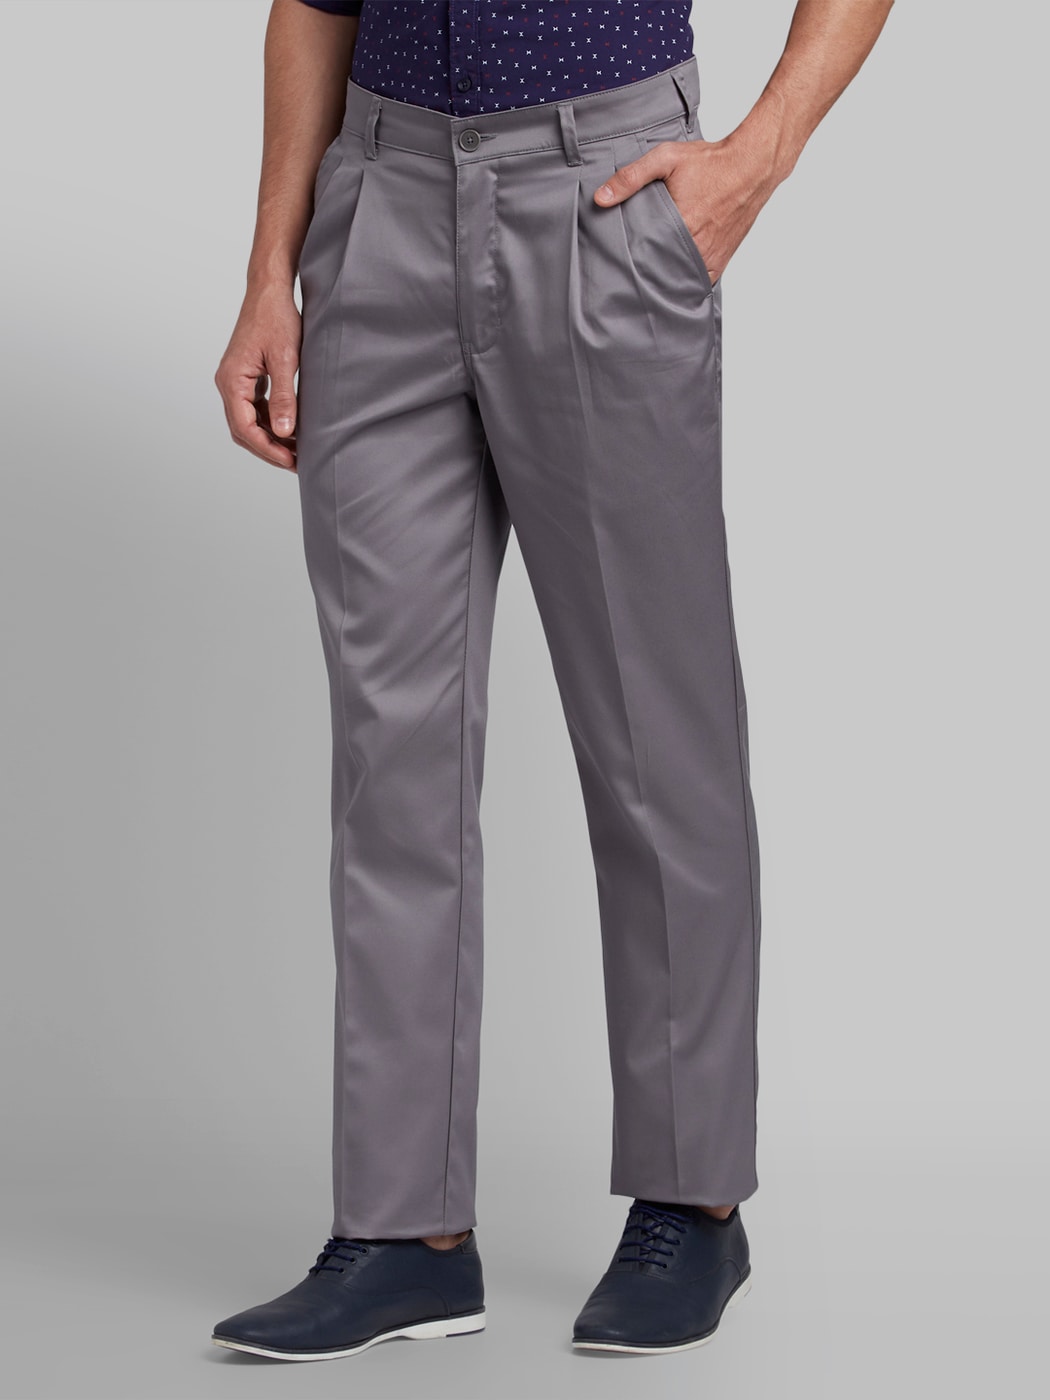 Buy COLOR PLUS Men's Loose Casual Pants (CMTB11511-H3_Medium Khaki_36 at  Amazon.in